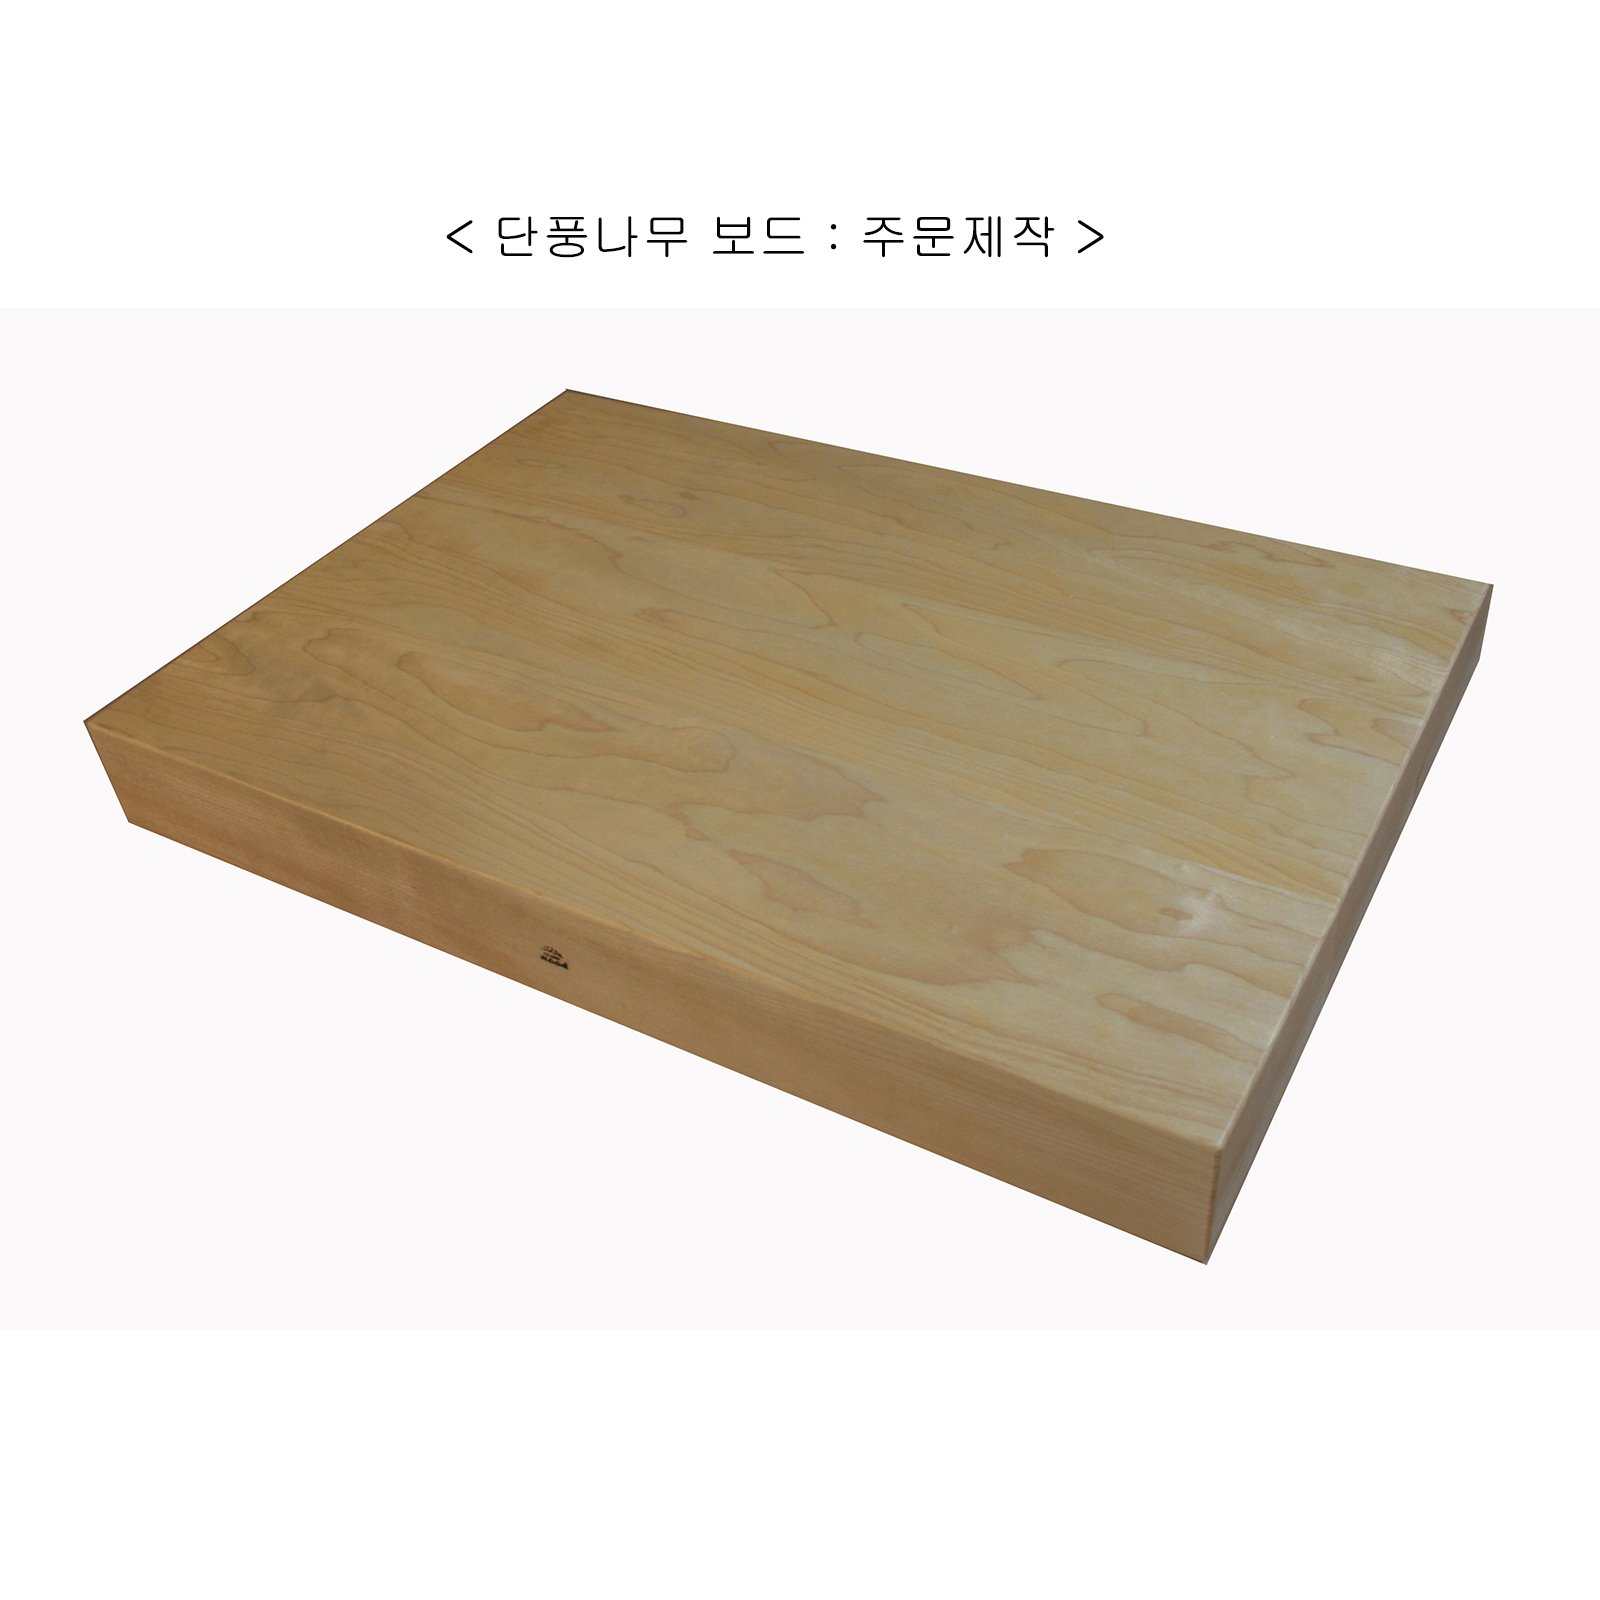 단풍나무 보드 (Hard Maple Board), 주문제작